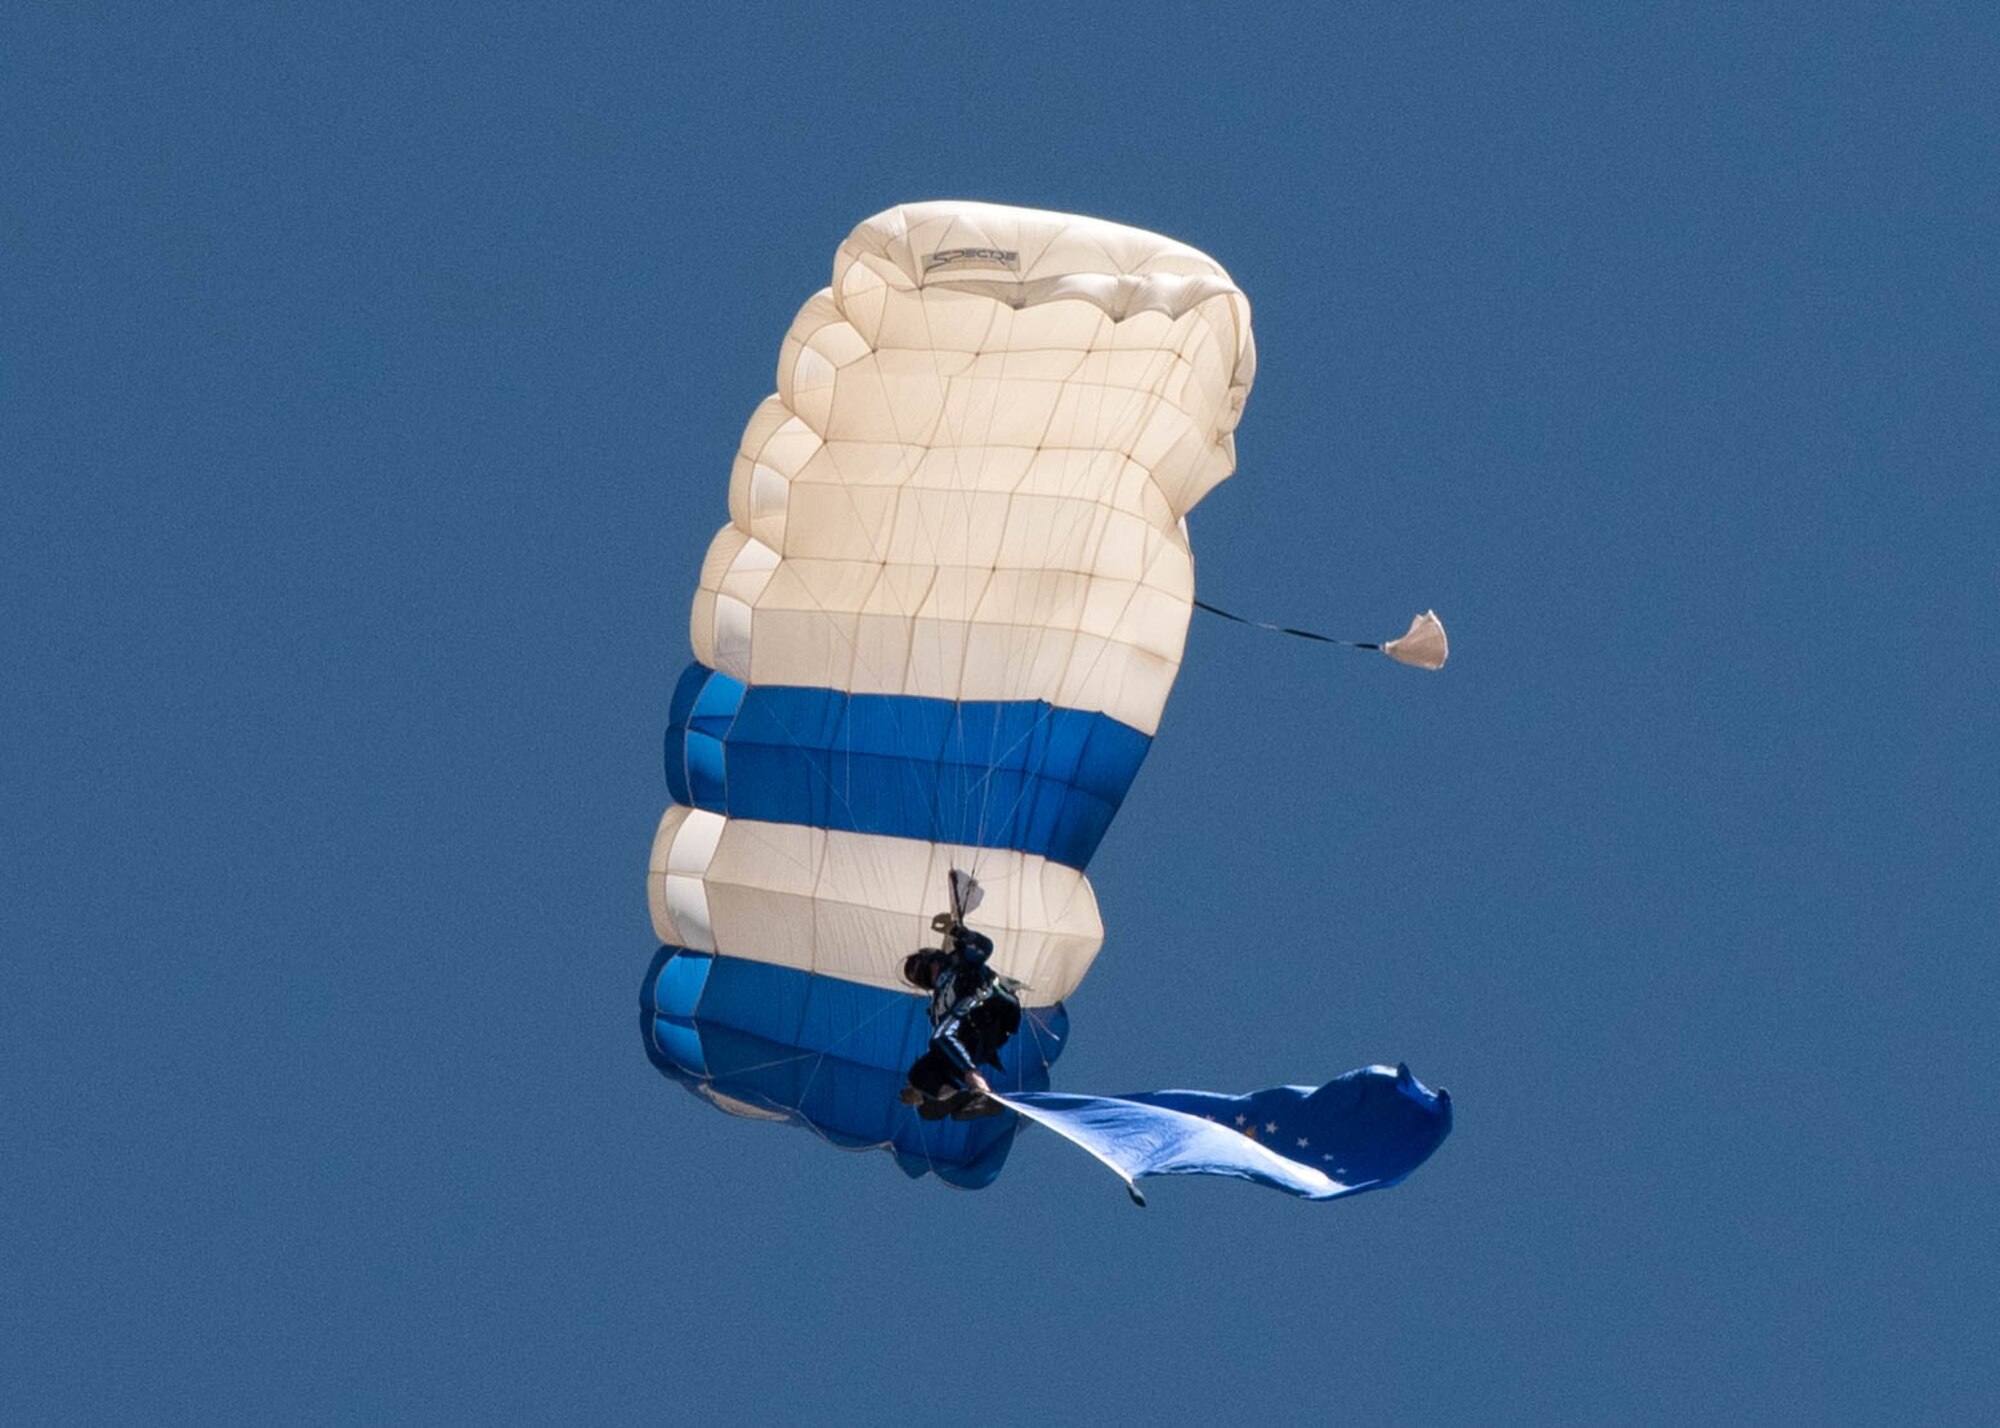 A parachutist descends